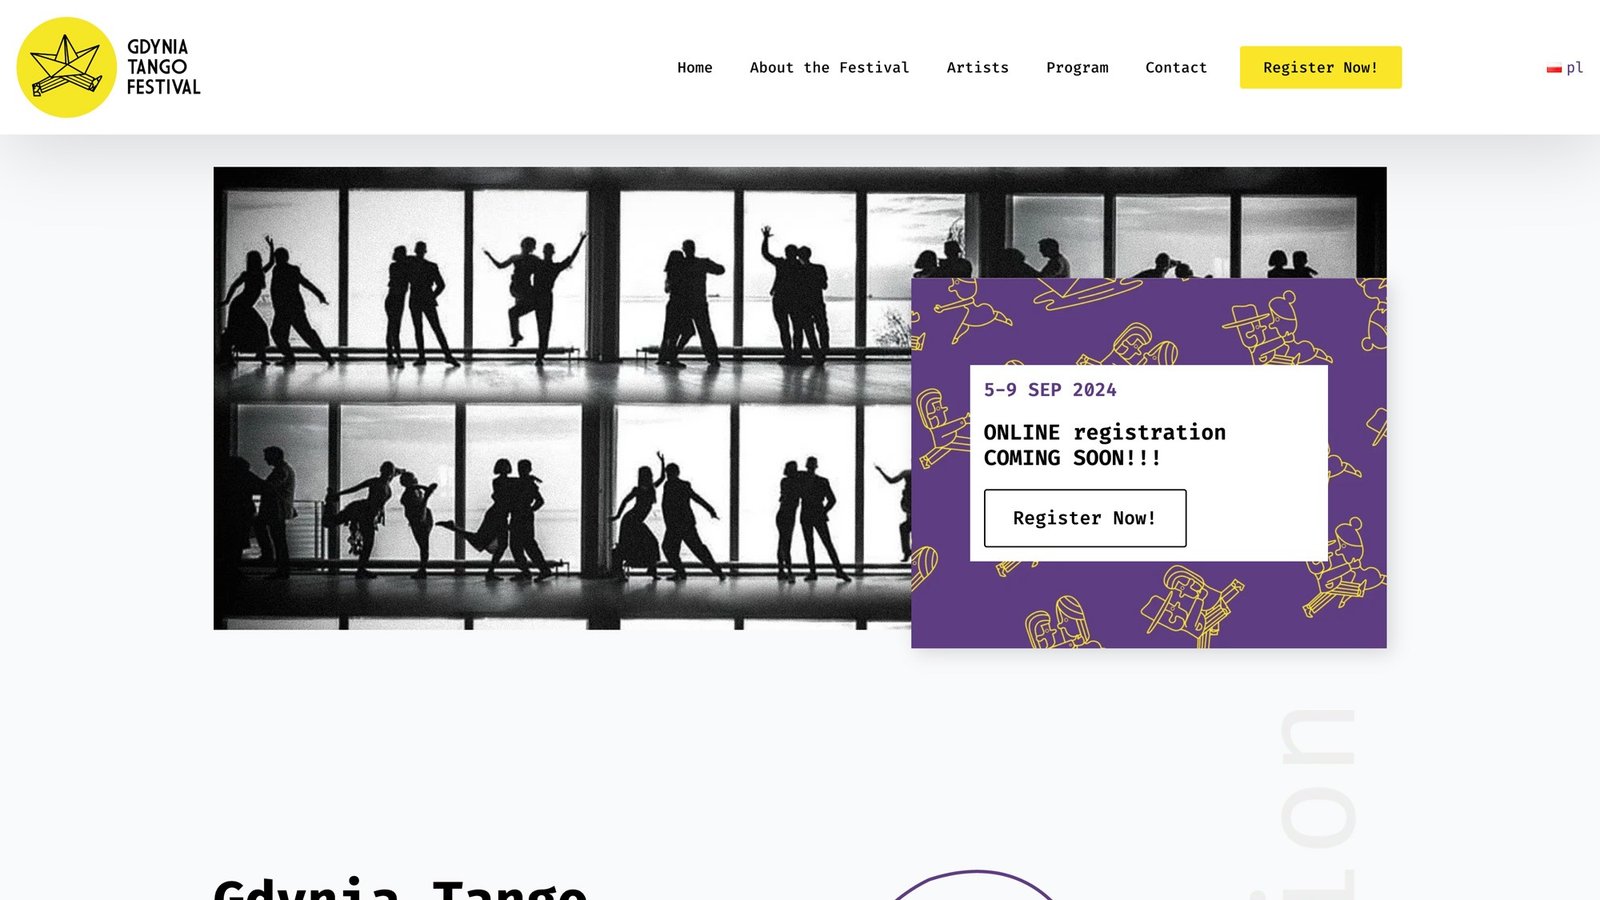 Gdynia Tango Festival website design